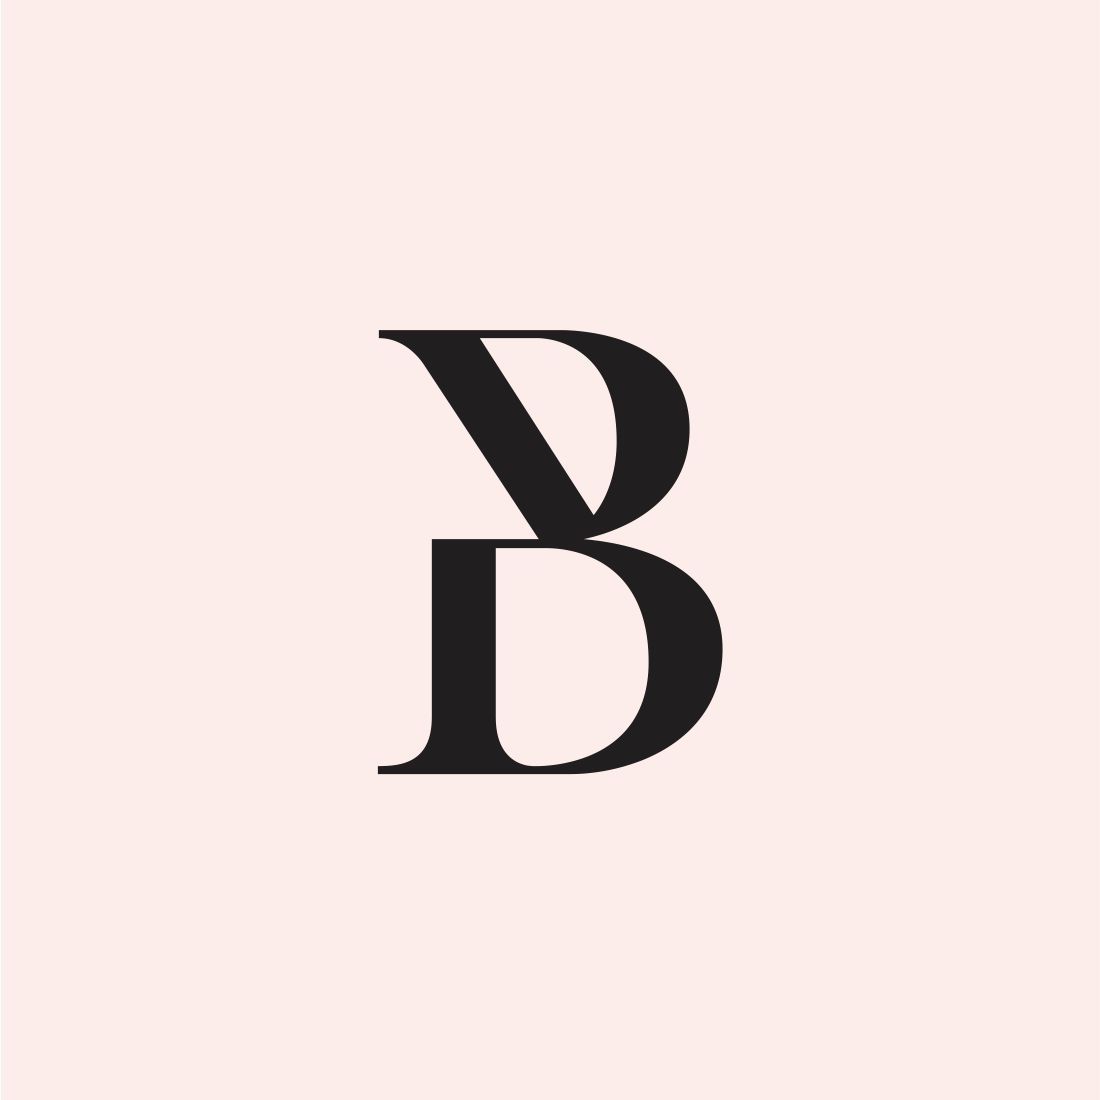 Monogram letter B -$5 cover image.